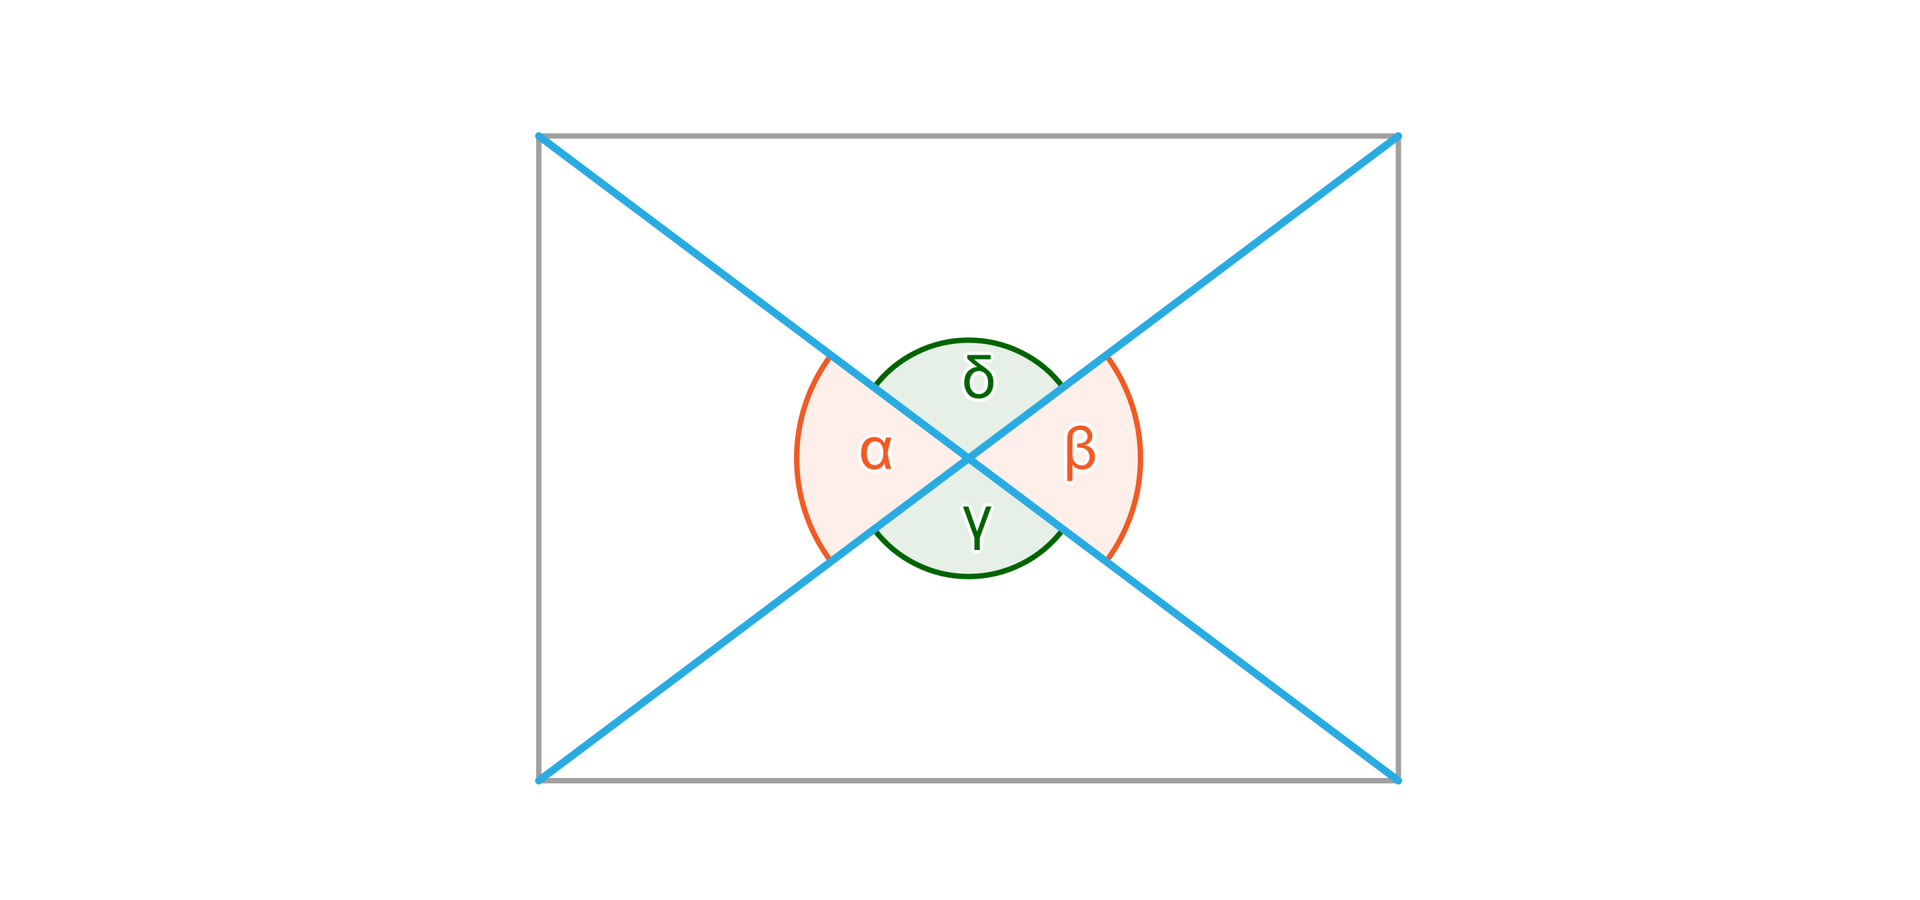 Ilustracja przedstawia prostokąt, w którym poprowadzono przekątne. Na rysunku zaznaczono również cztery kąty o wspólnym wierzchołku, który jest punktem przecięcia przekątnych. Te kąty to alfa, beta, gamma i sigma.